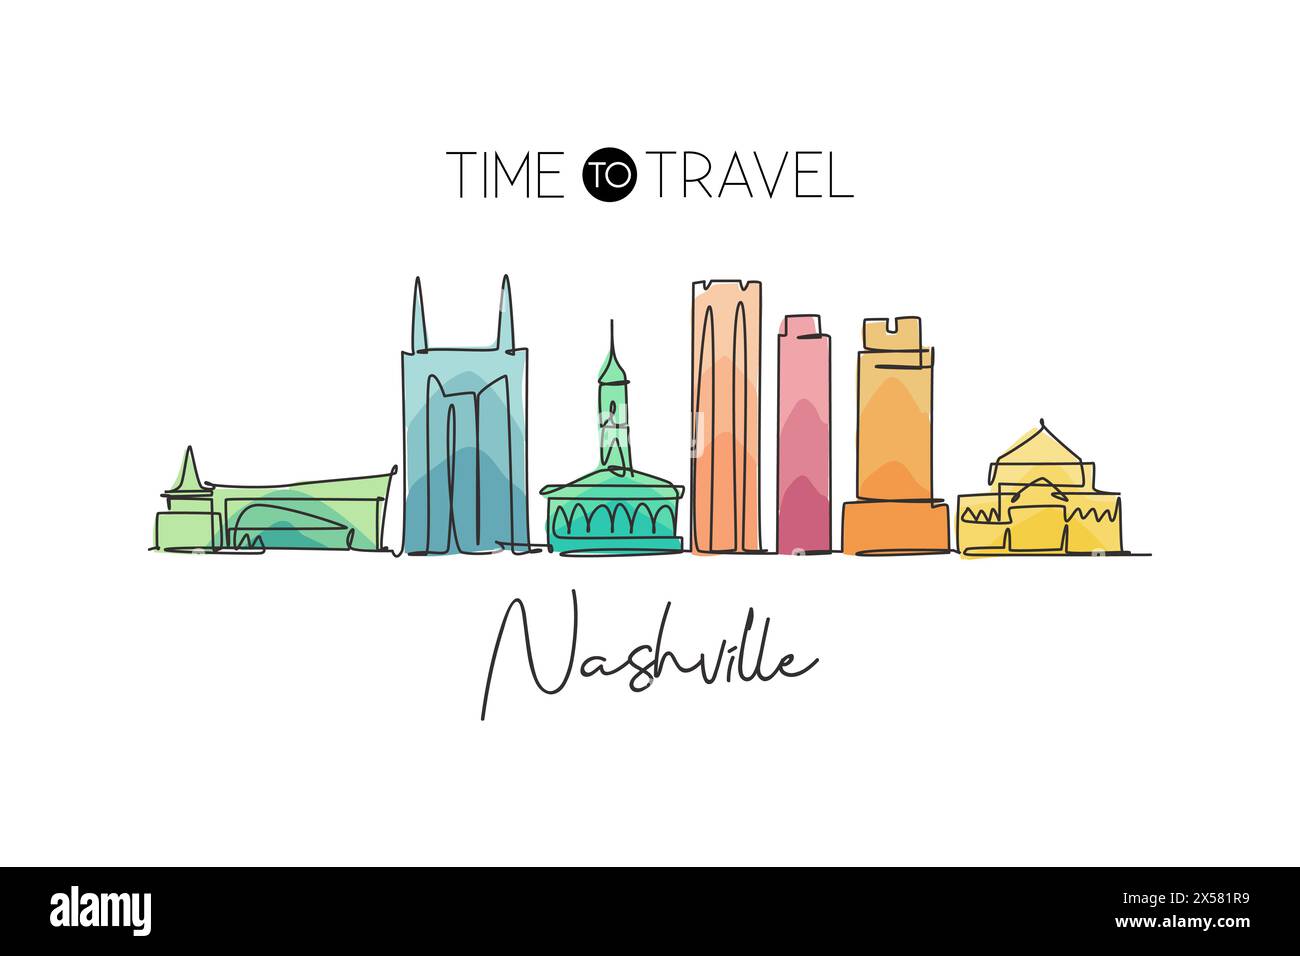 Eine durchgehende Linie, die die Skyline von Nashville, Tennessee, einzeichnet. Wunderschönes Wahrzeichen. Poster Weltlandschaftstourismus Reise Urlaub. Bearbeitbares, elegantes ST Stock Vektor